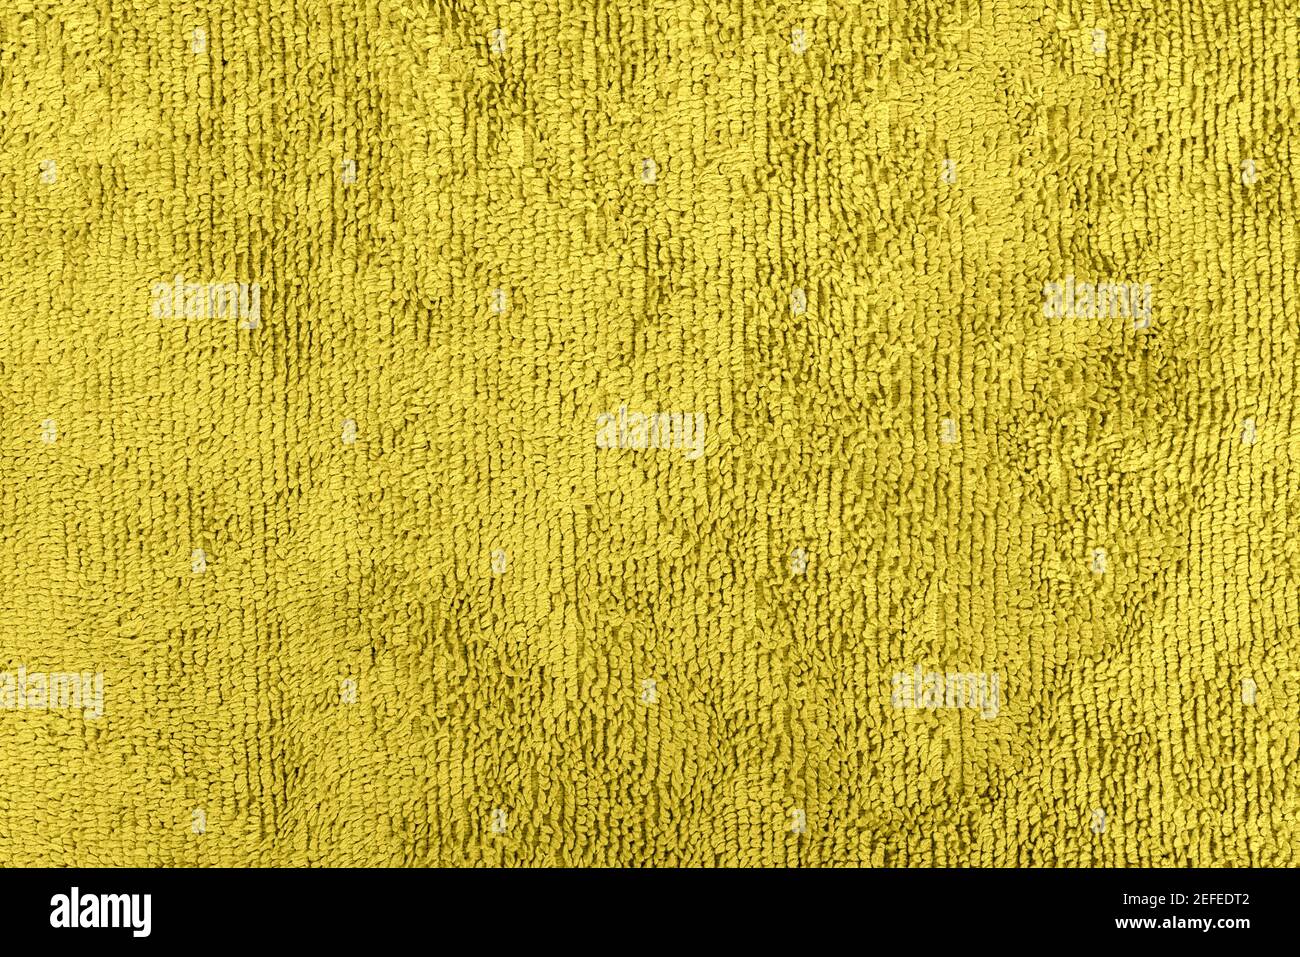 Hintergrund oder Textur aus gelber Microfaser-Qualität Stockfoto